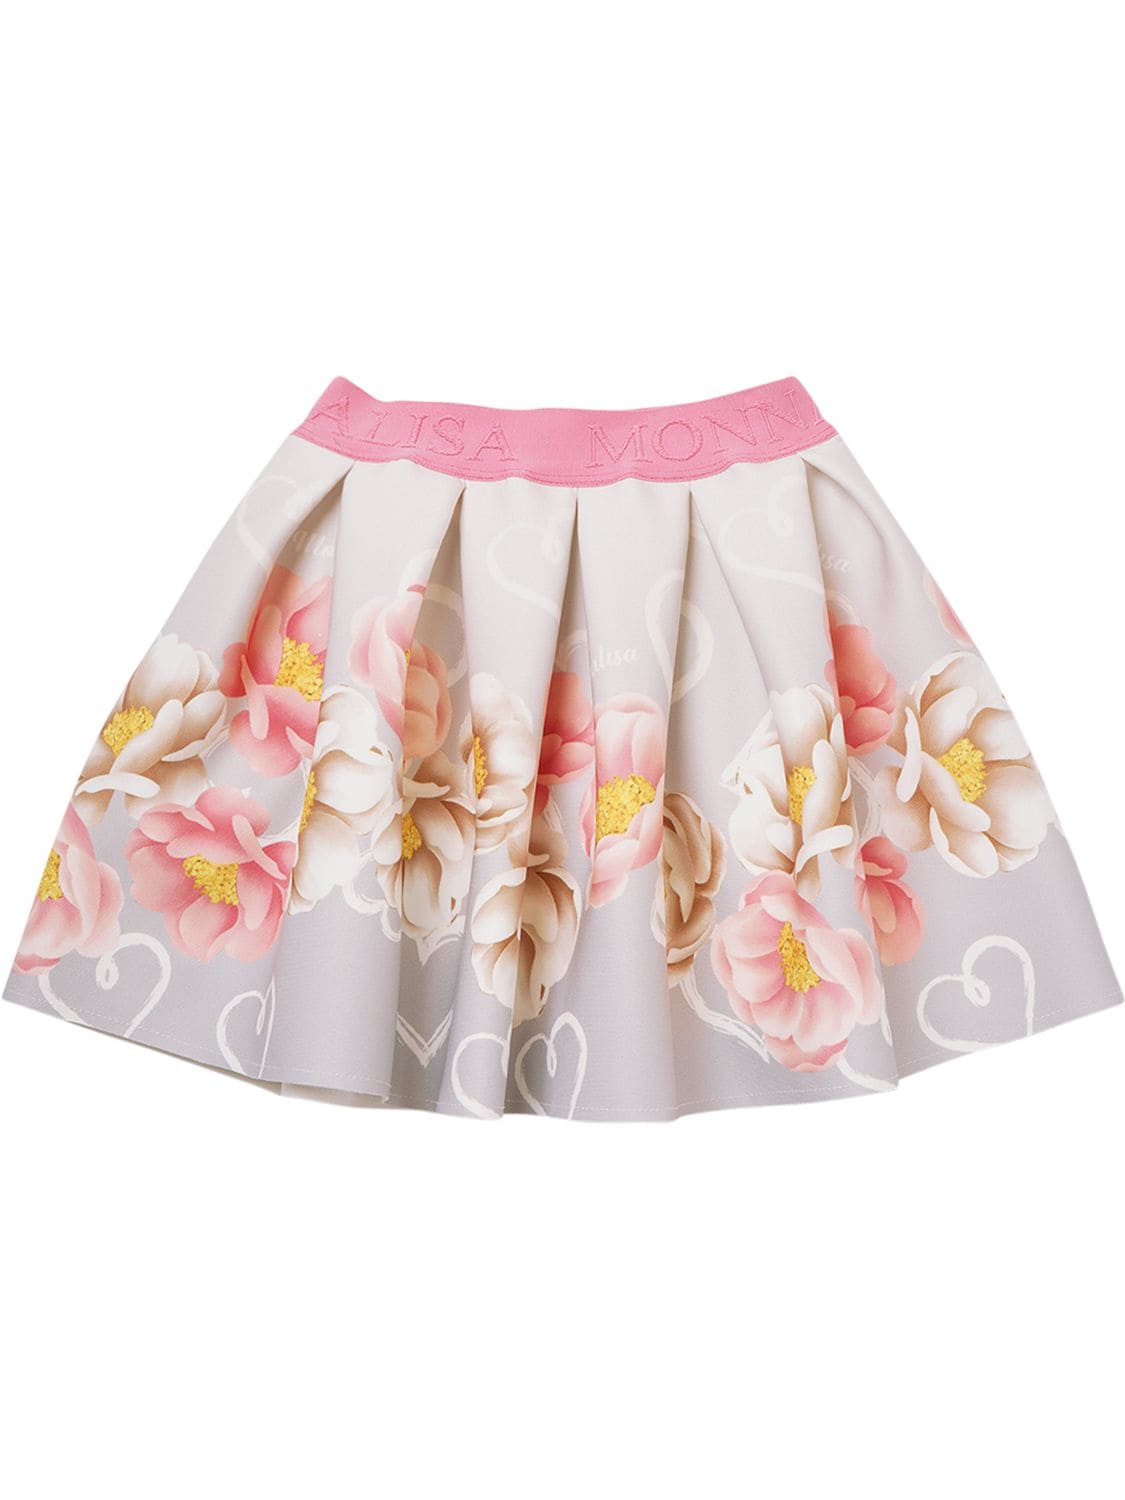 Image of Flower Print Neoprene Skirt